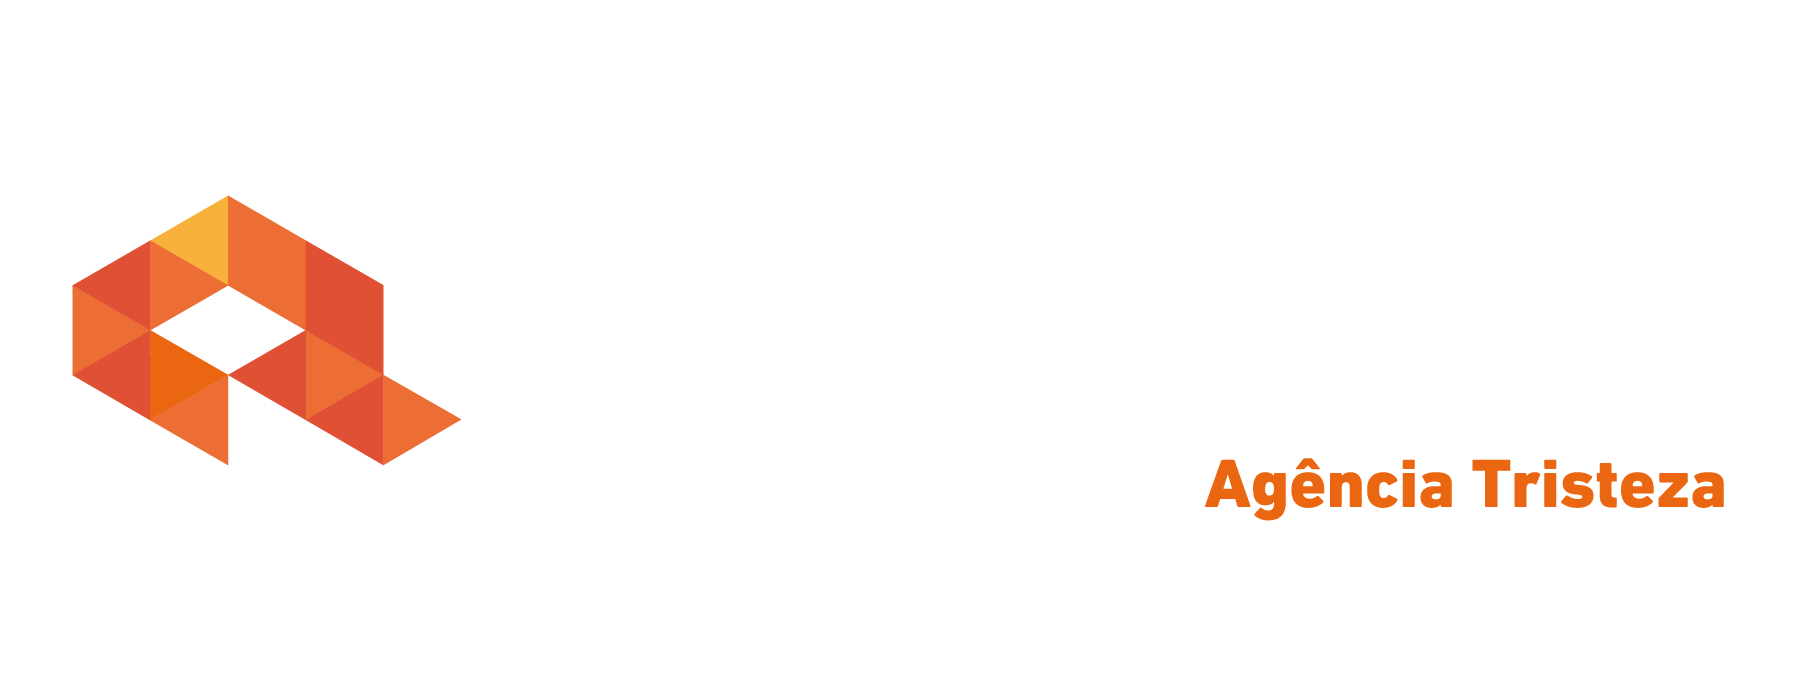 Logo crédito real Crédito Real Tristeza